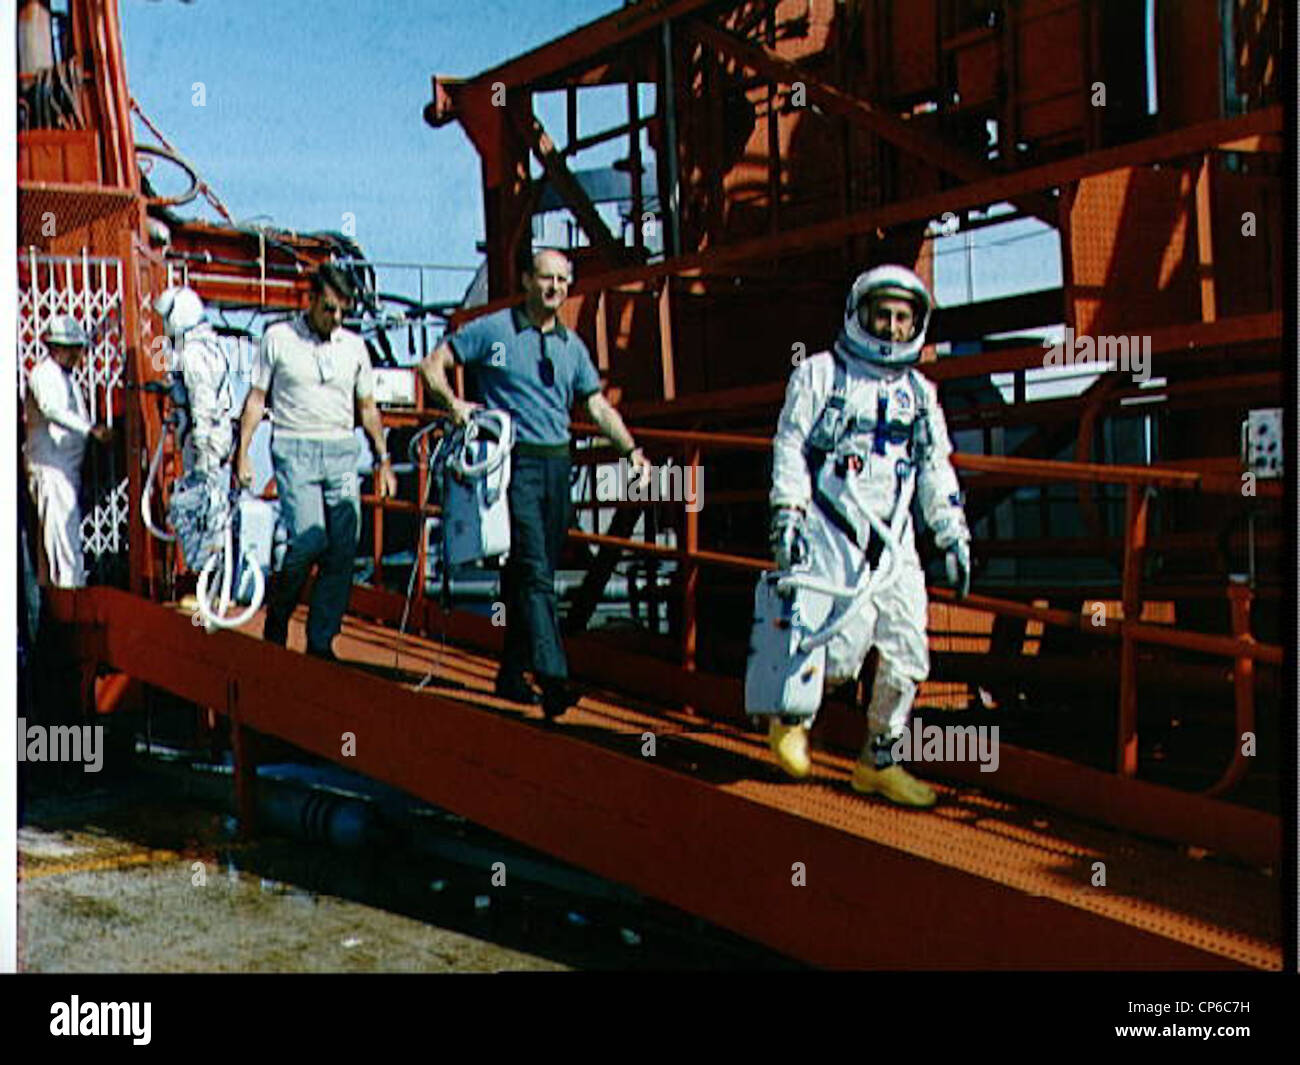 Durante l'allenamento di uscita, durante il lancio della simulazione Gemini-Titan 2 al Pad 19, vengono mostrati gli astronauti John W. Young, Walter M. Schirra Jr., Thomas P. Stafford e Virgil I. Grissom (da sinistra a destra). Foto Stock